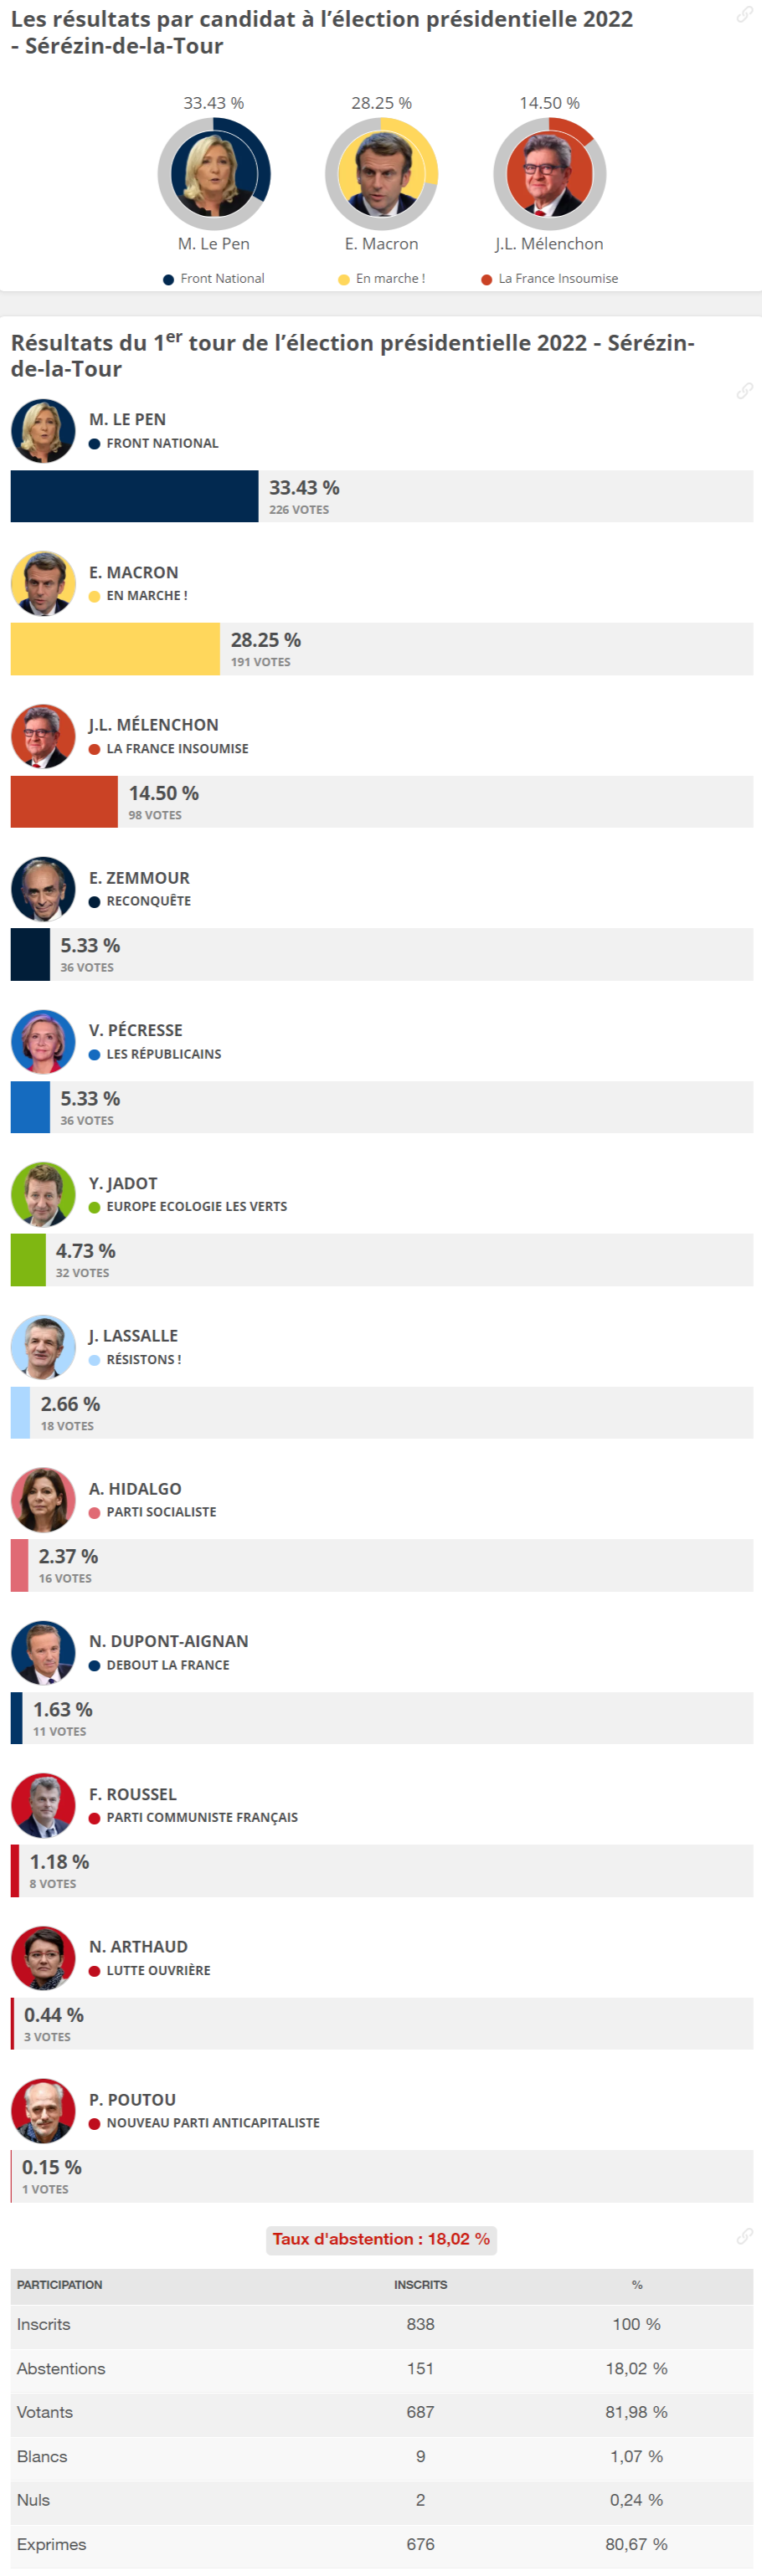 FireShot Capture 132 Résultat européennes Serezin de la To https election europeenne.linter